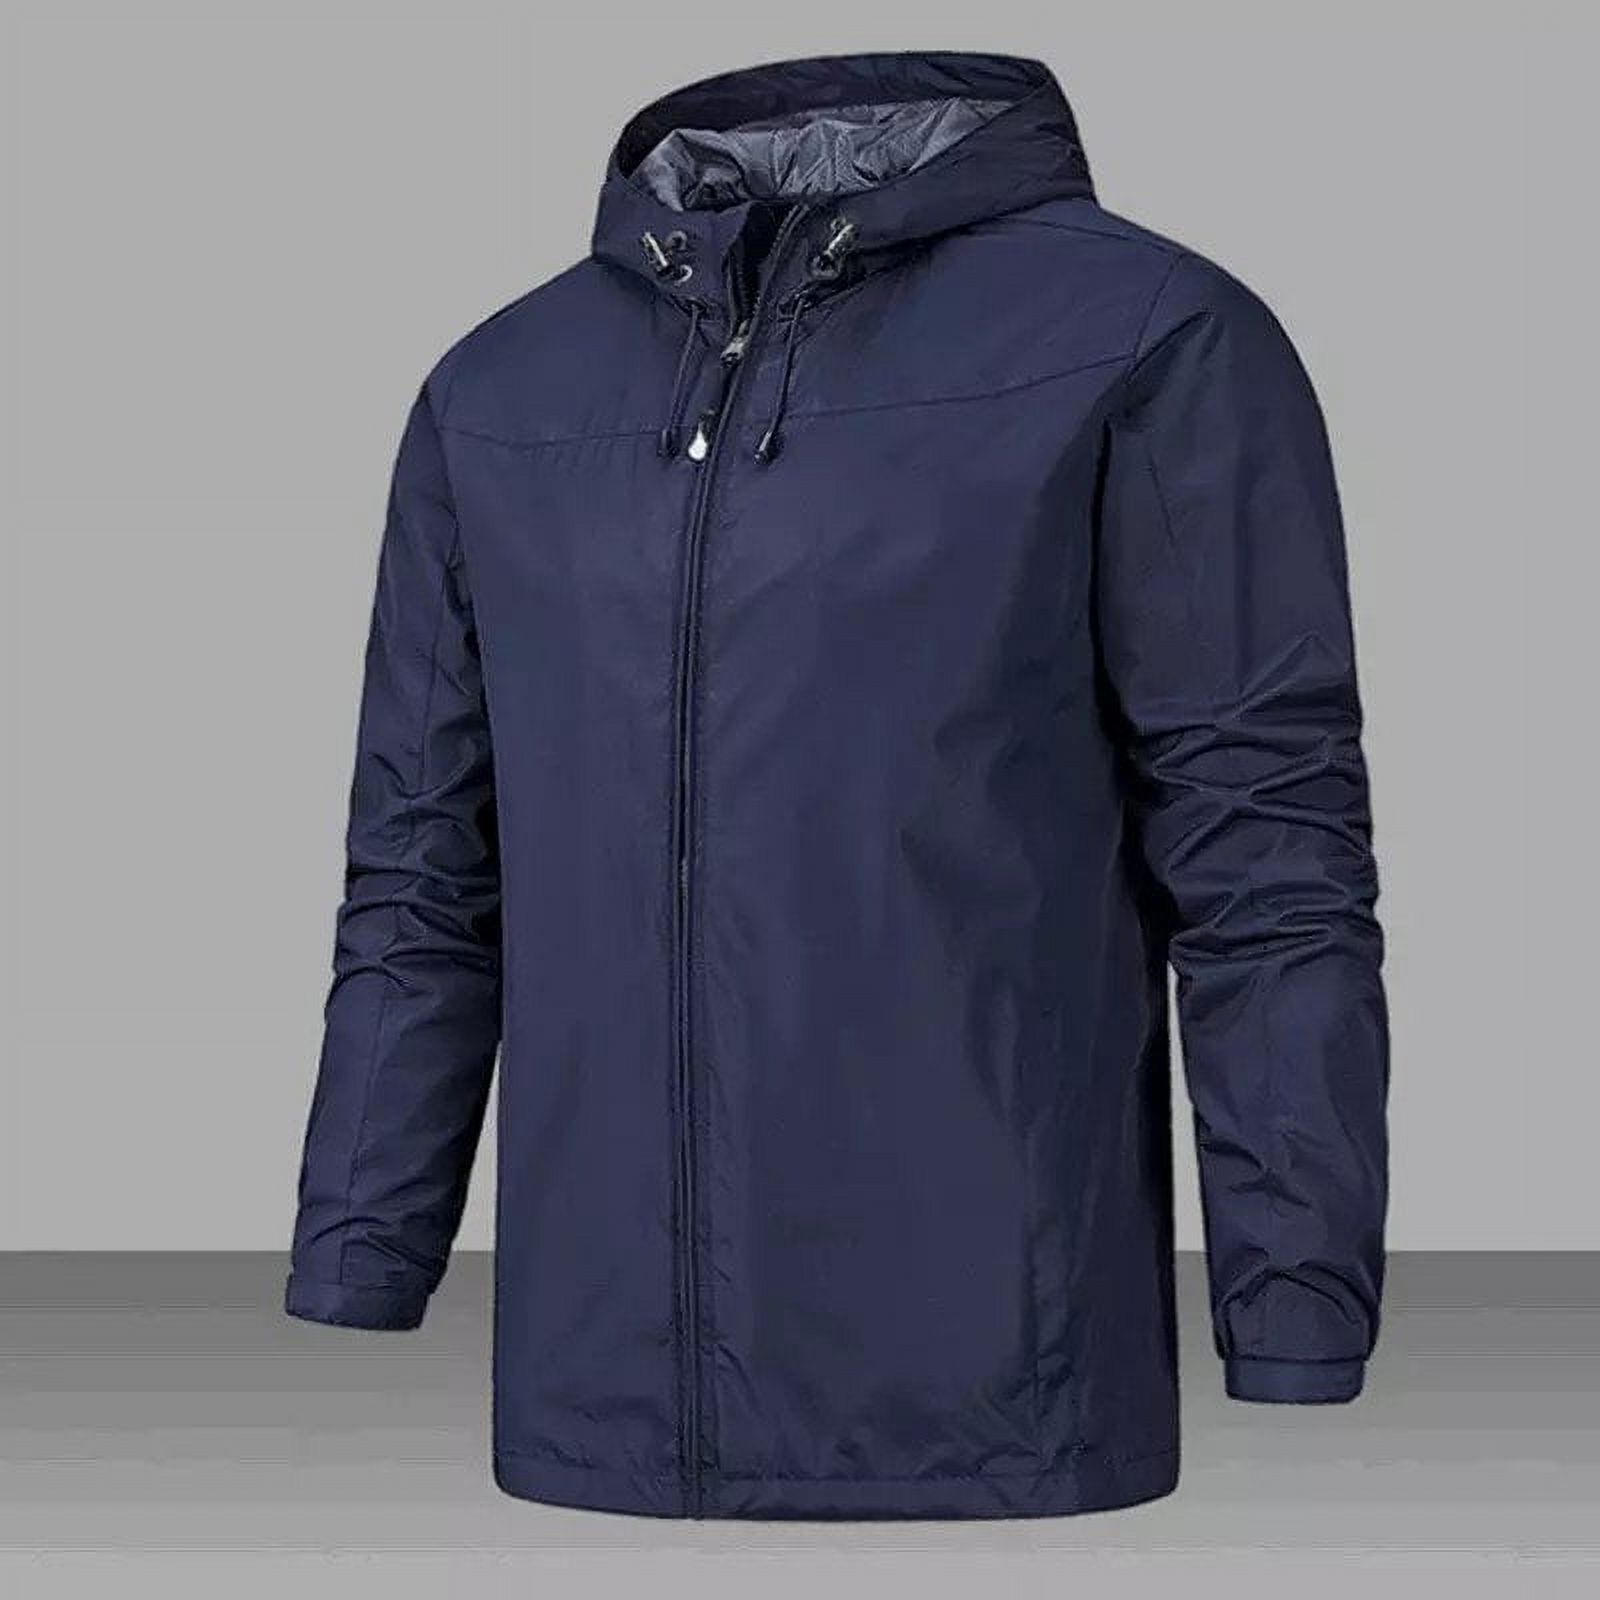 Zoomarlous Unisex Windproof Waterproof Jacket 2021 Outdoor Mountaineering Autumn Winter Jacket Zipper Design - image 5 of 10